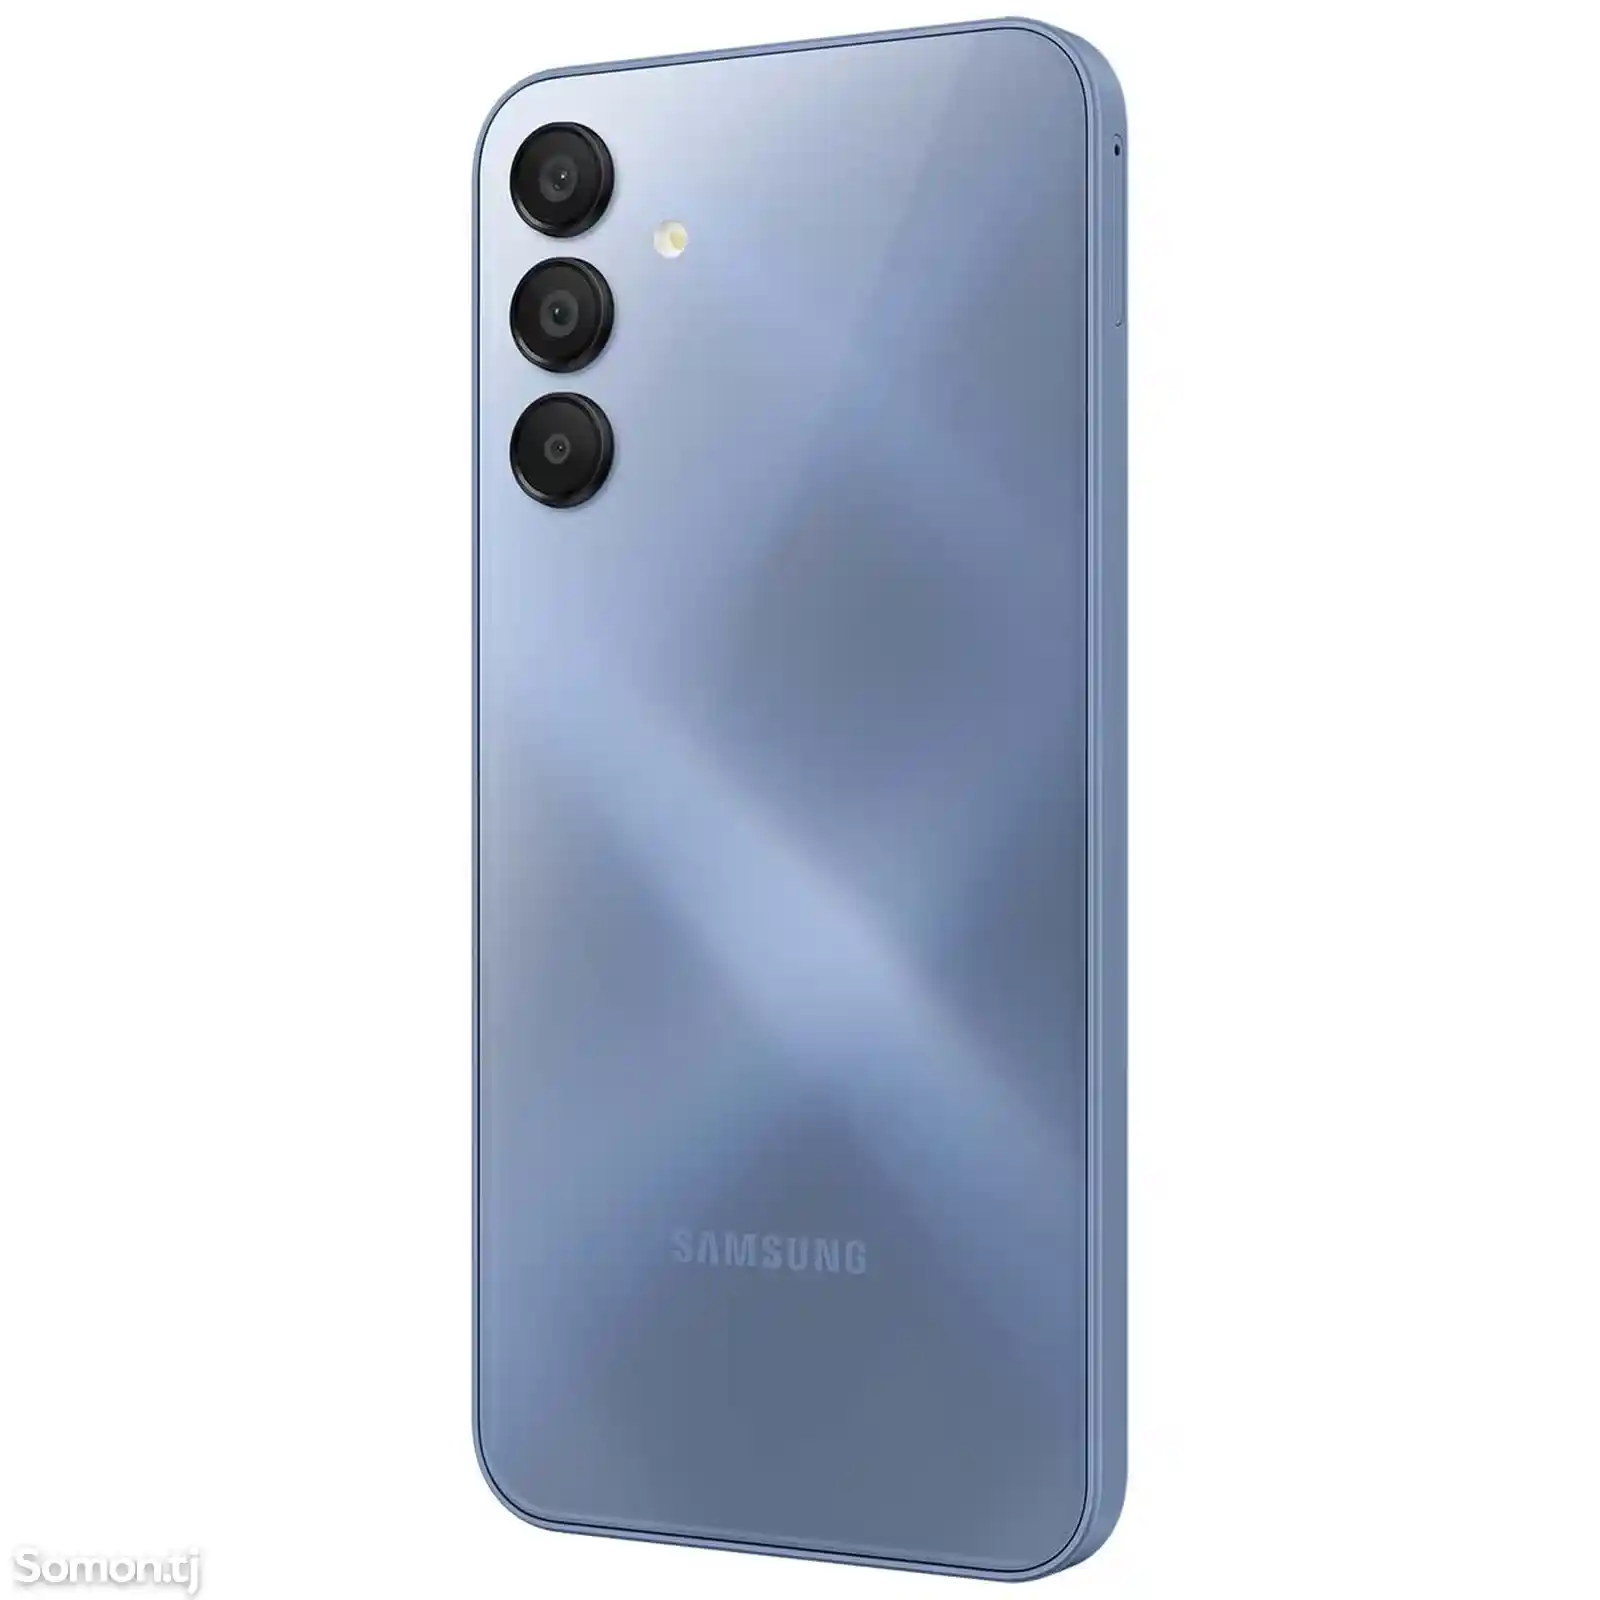 Samsung Galaxy A15-3